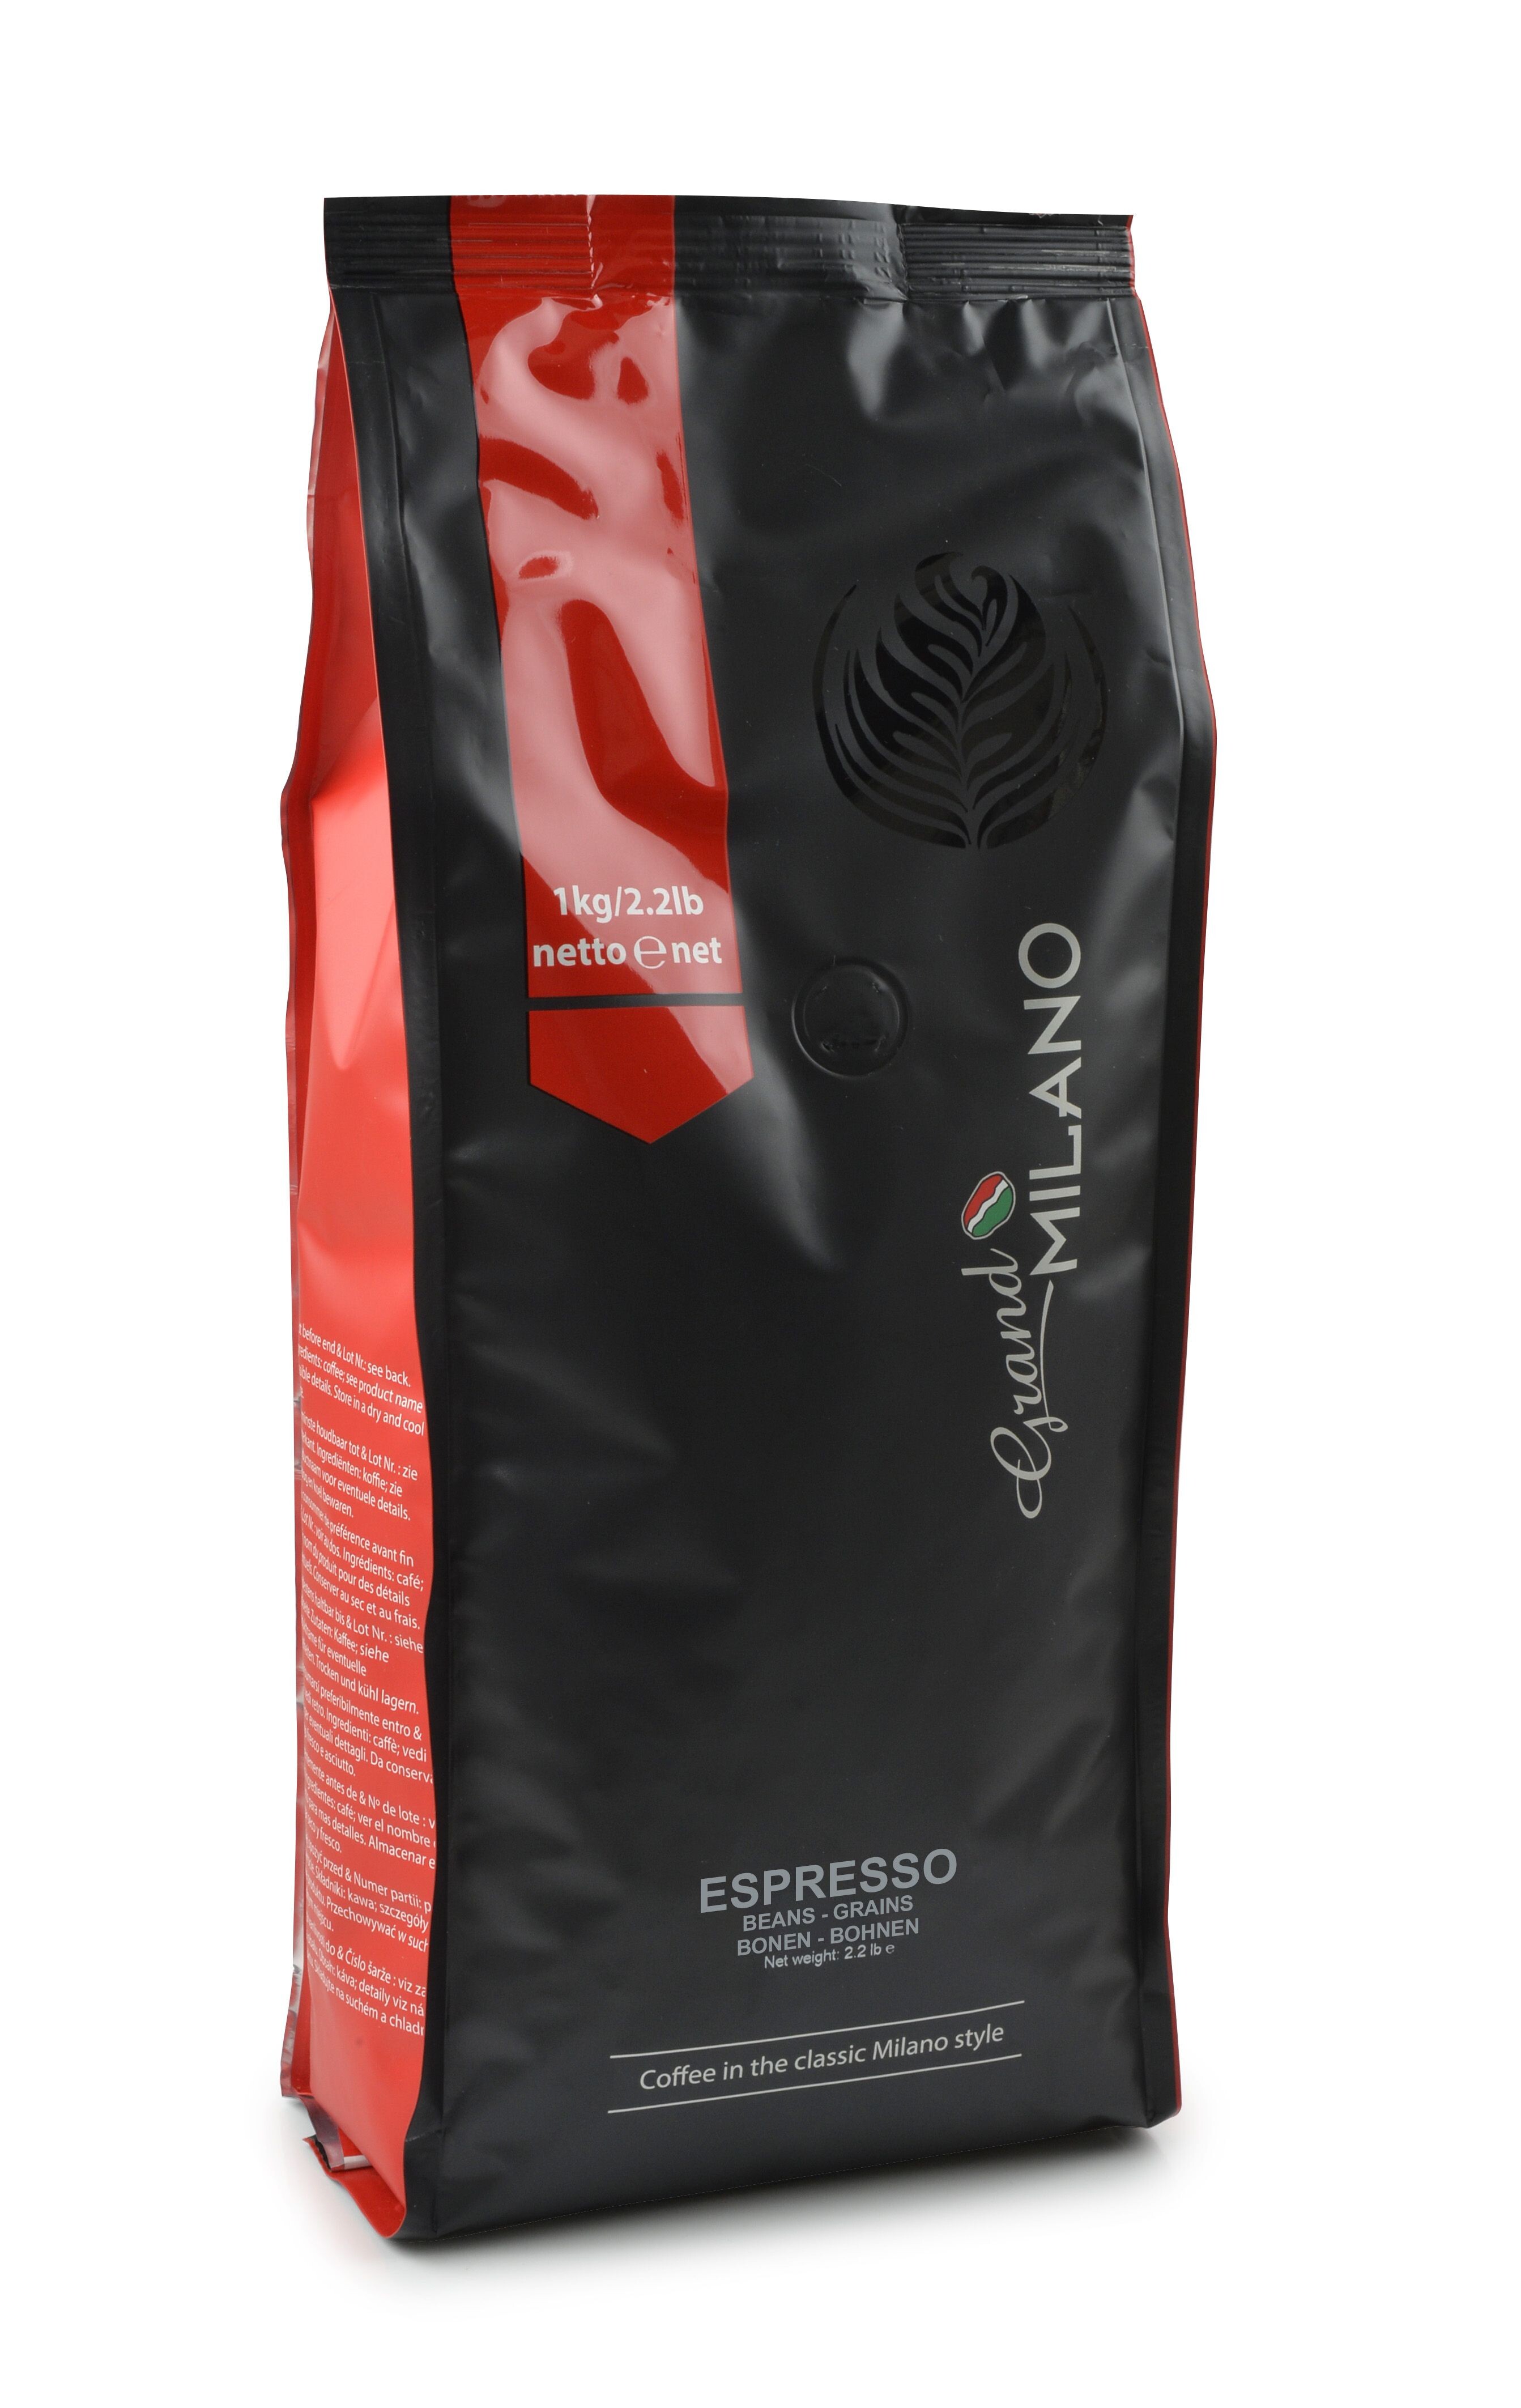 Coffee Grand Milano espresso beans 1kg 